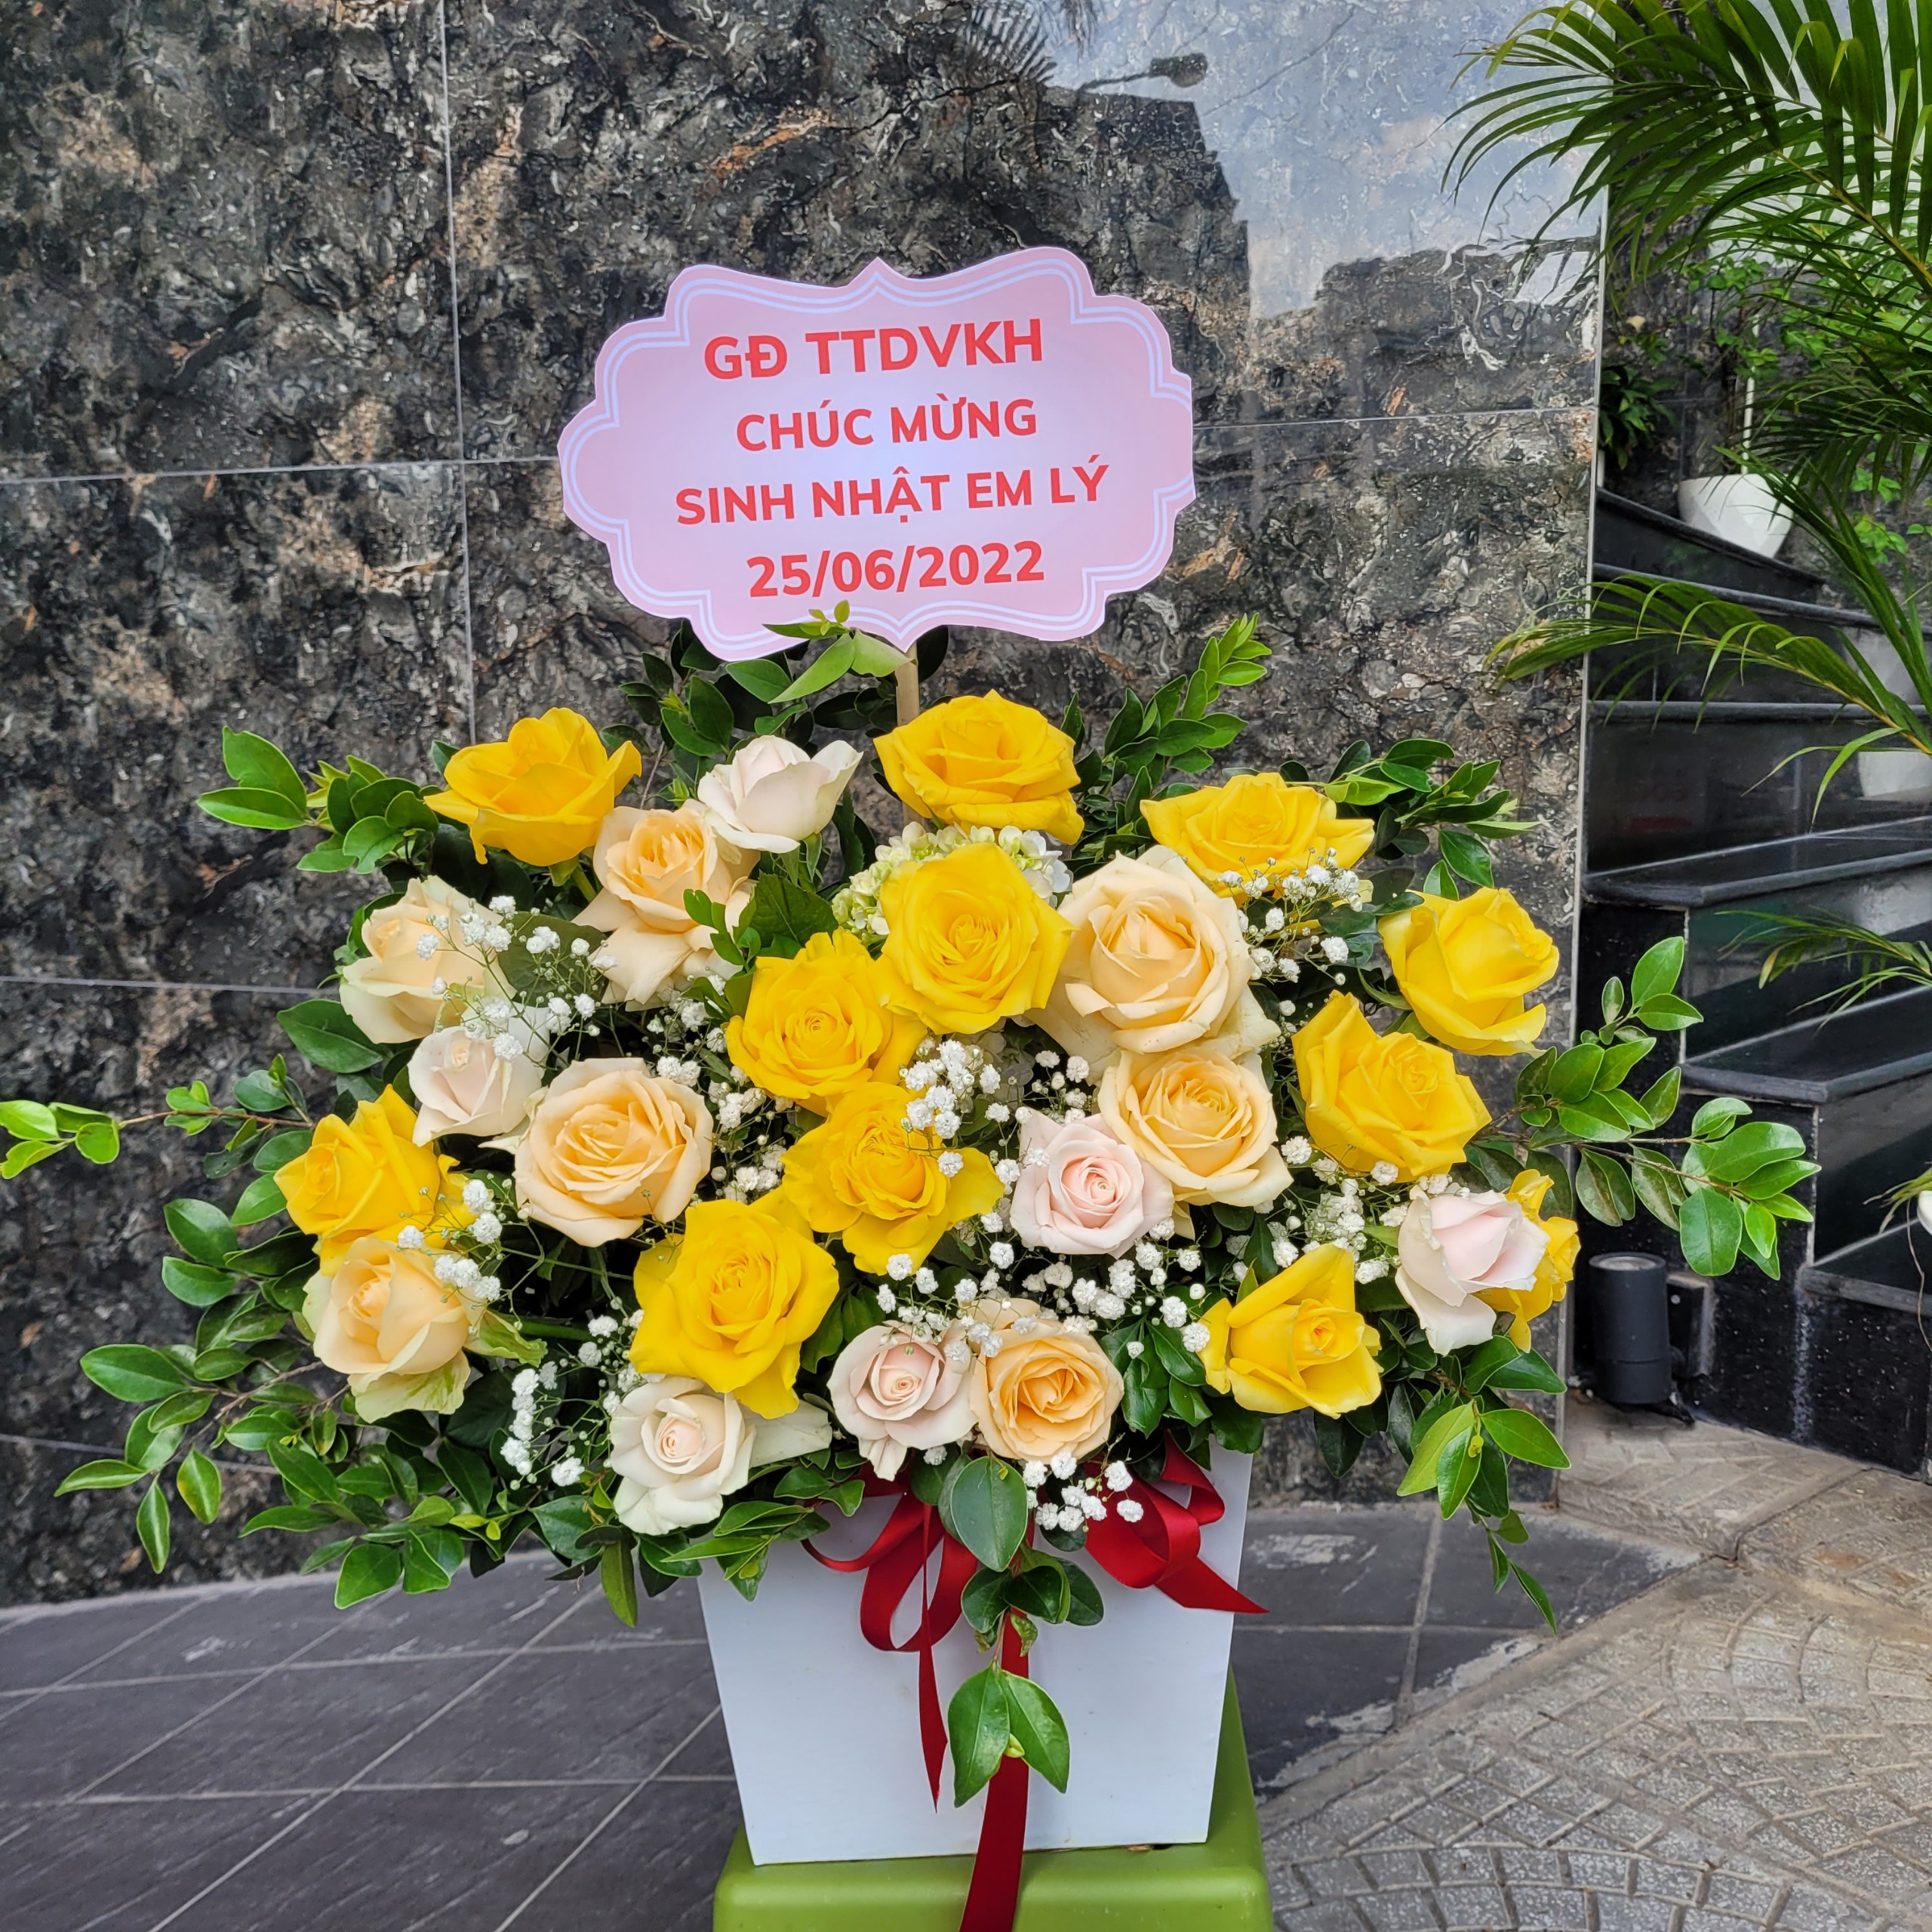 Mẫu bó hoa sinh nhật tại 	Thị trấn Lộc Ninh	 Lộc Ninh	Bình Phước